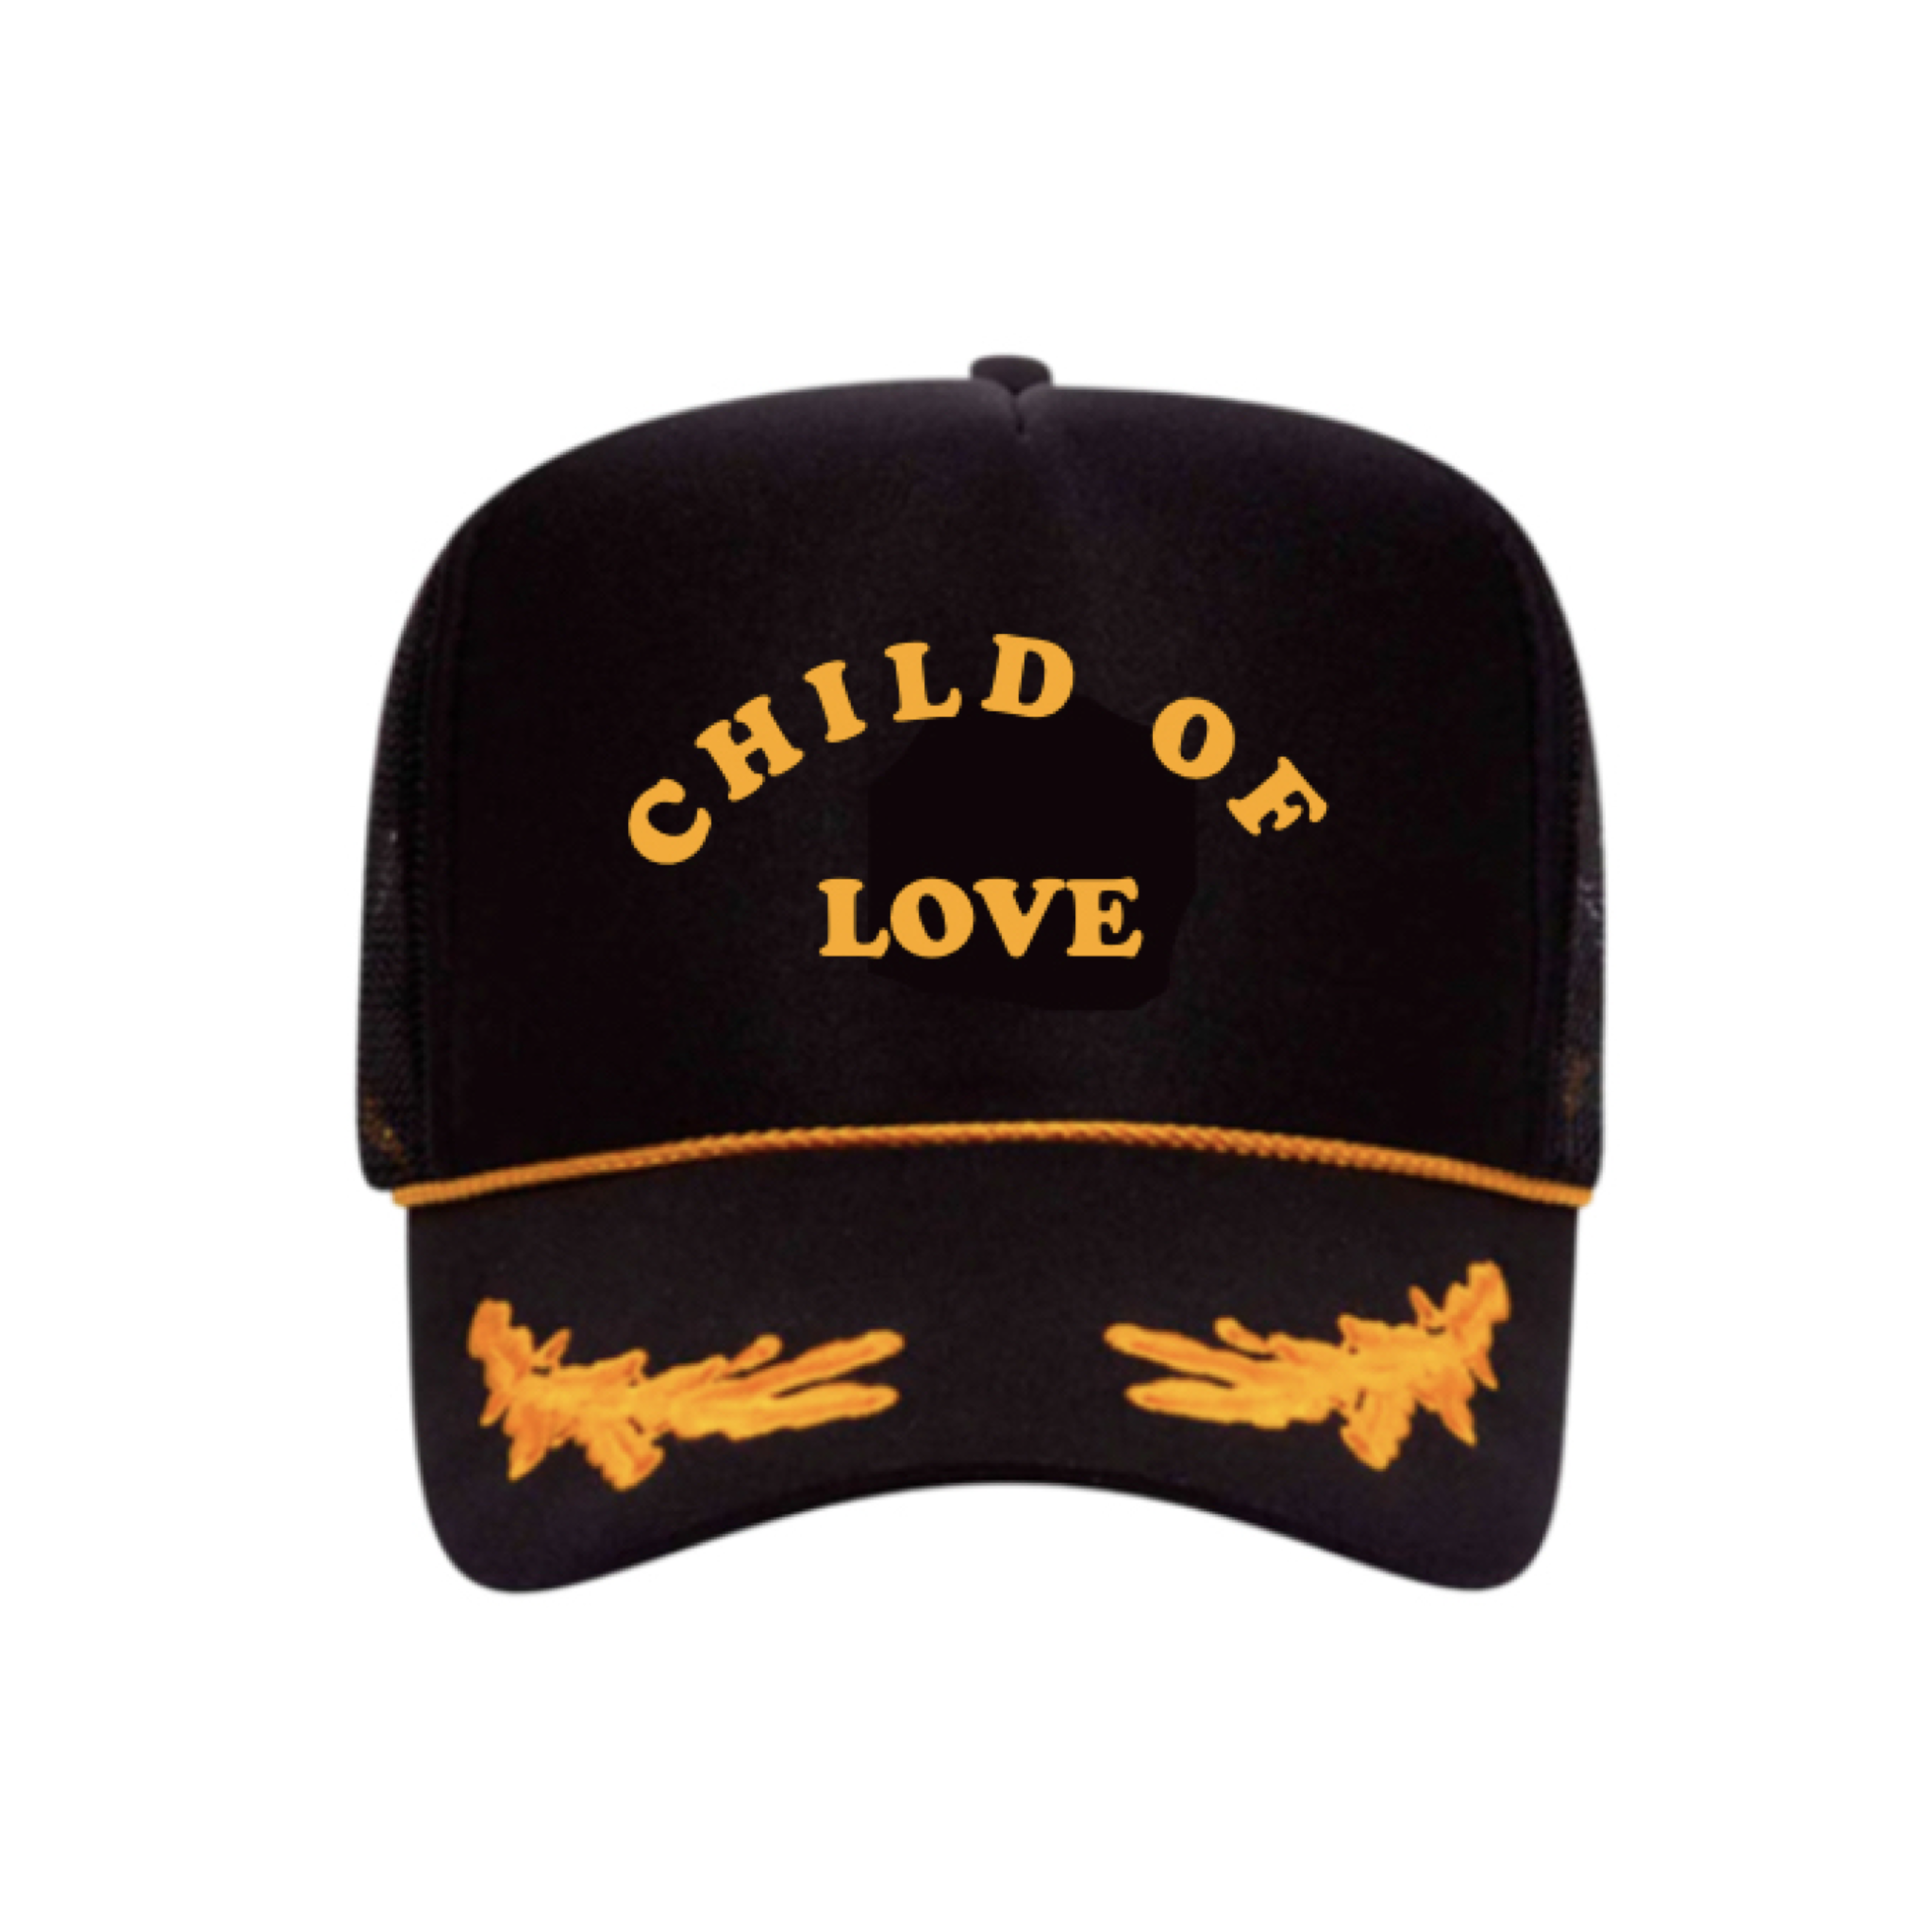 CHILD OF LOVE - TRUCKER HAT